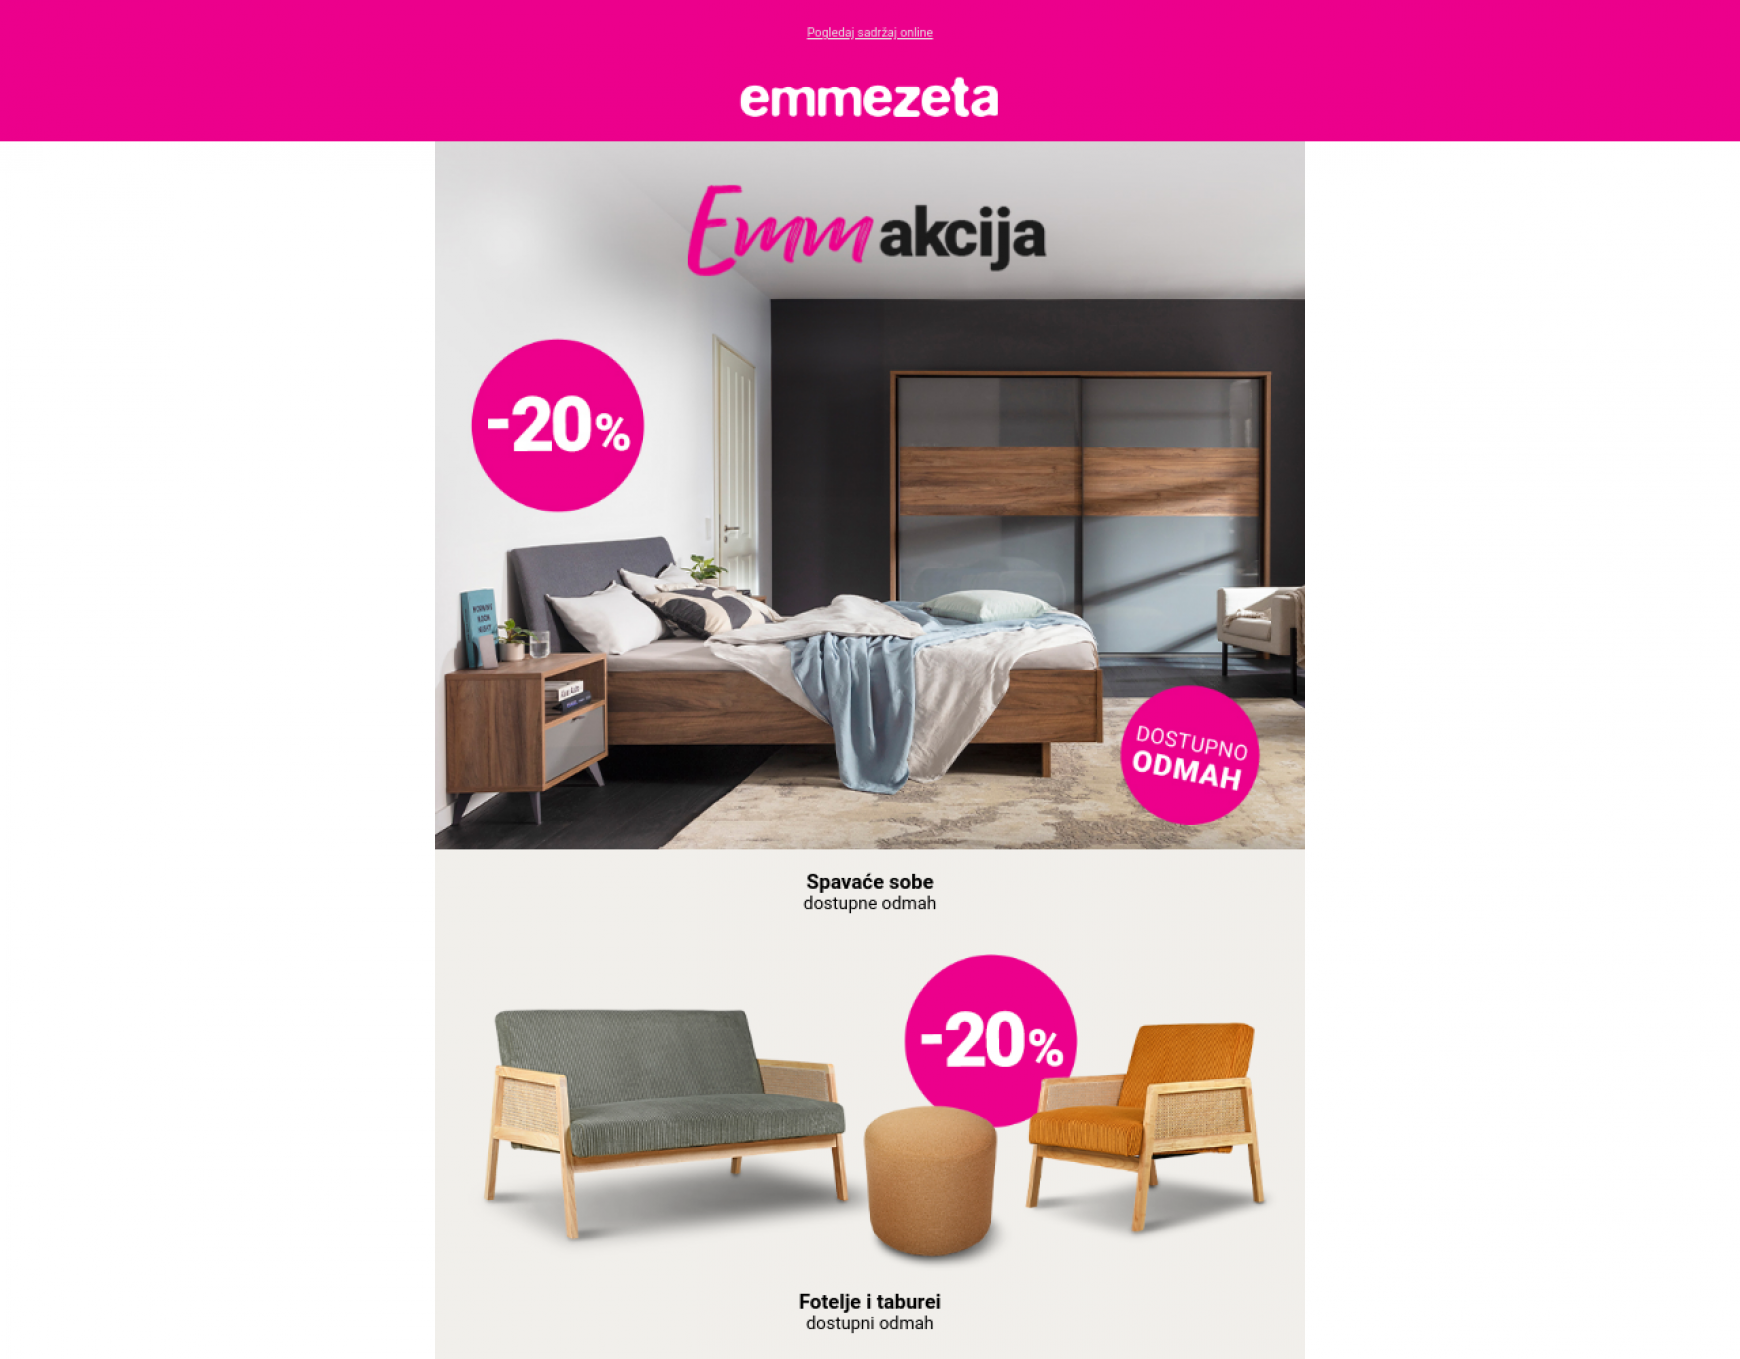 emmezeta - Emmezeta 07.05. - page: 1